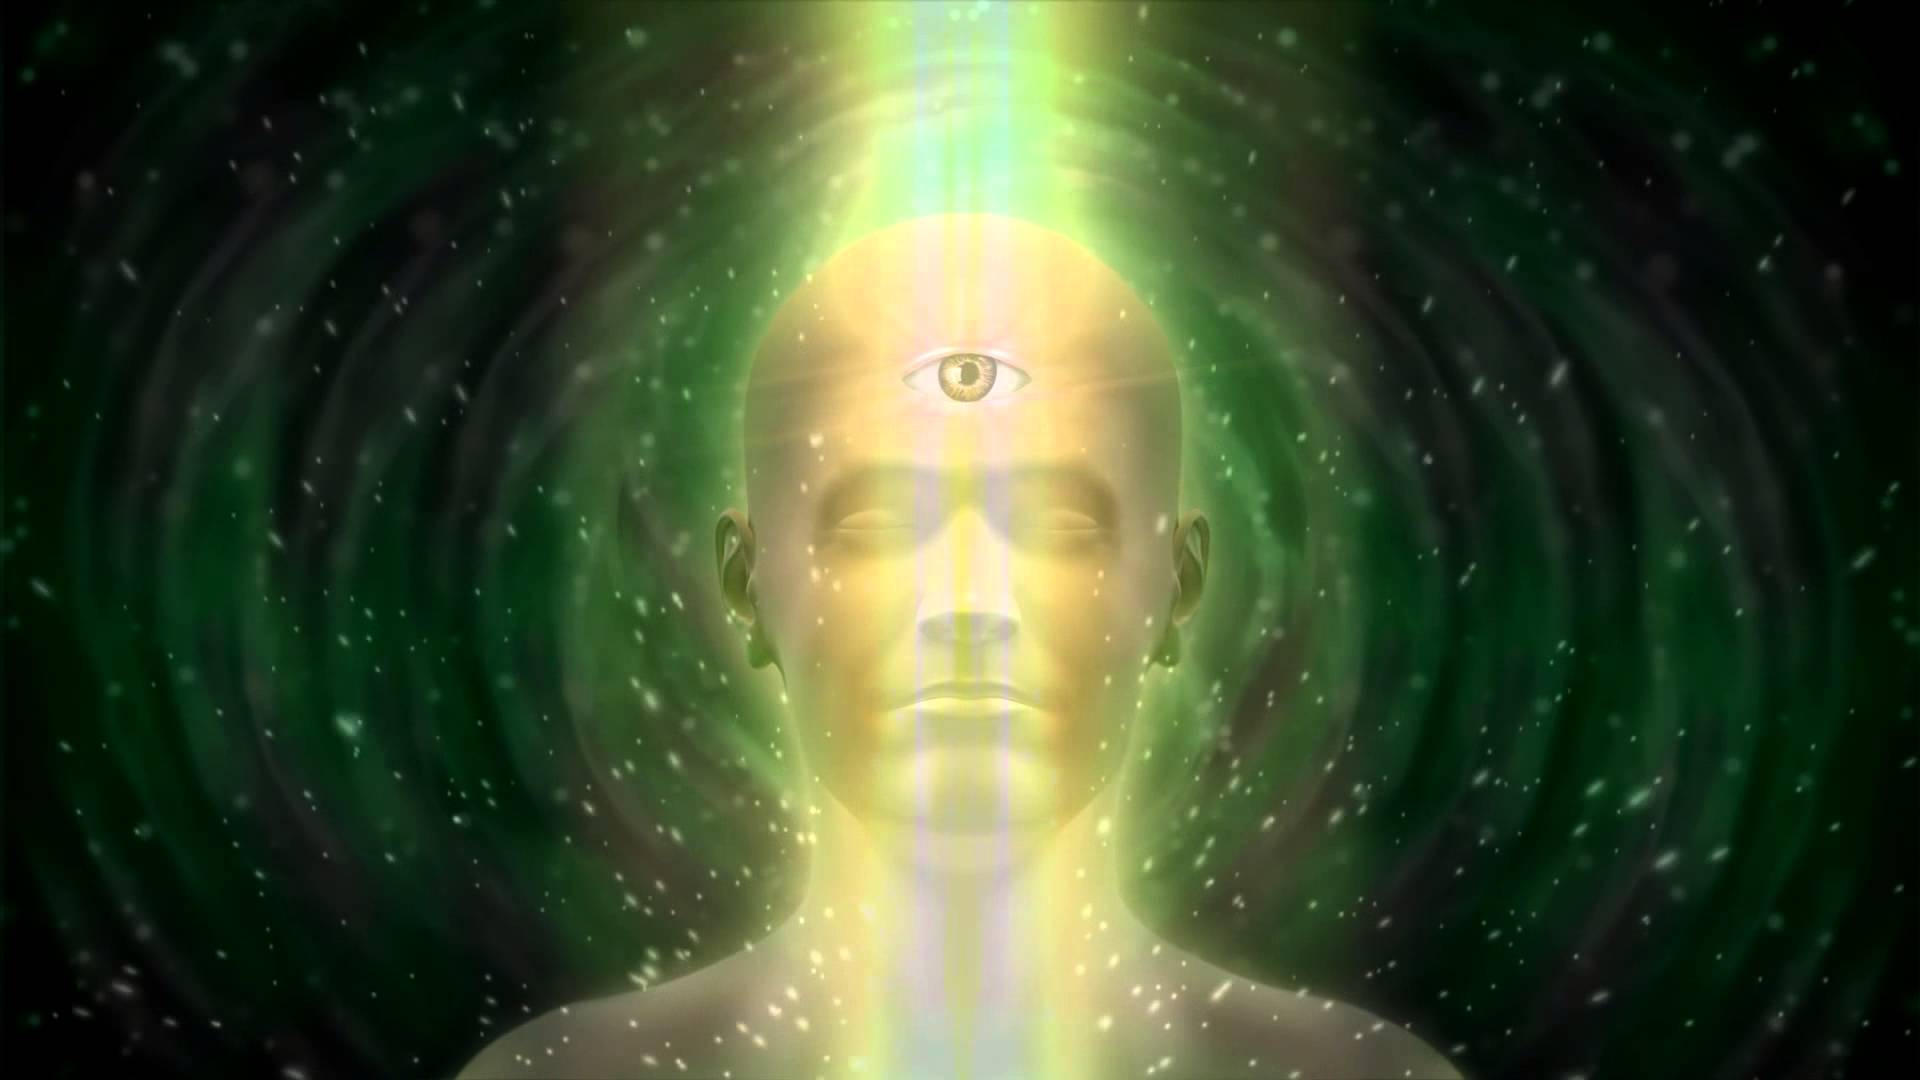 Как открыть 3 мир. Третий глаз. Ясновидение третий глаз. Медитация 3 глаз. Медитация для открытия третьего глаза.